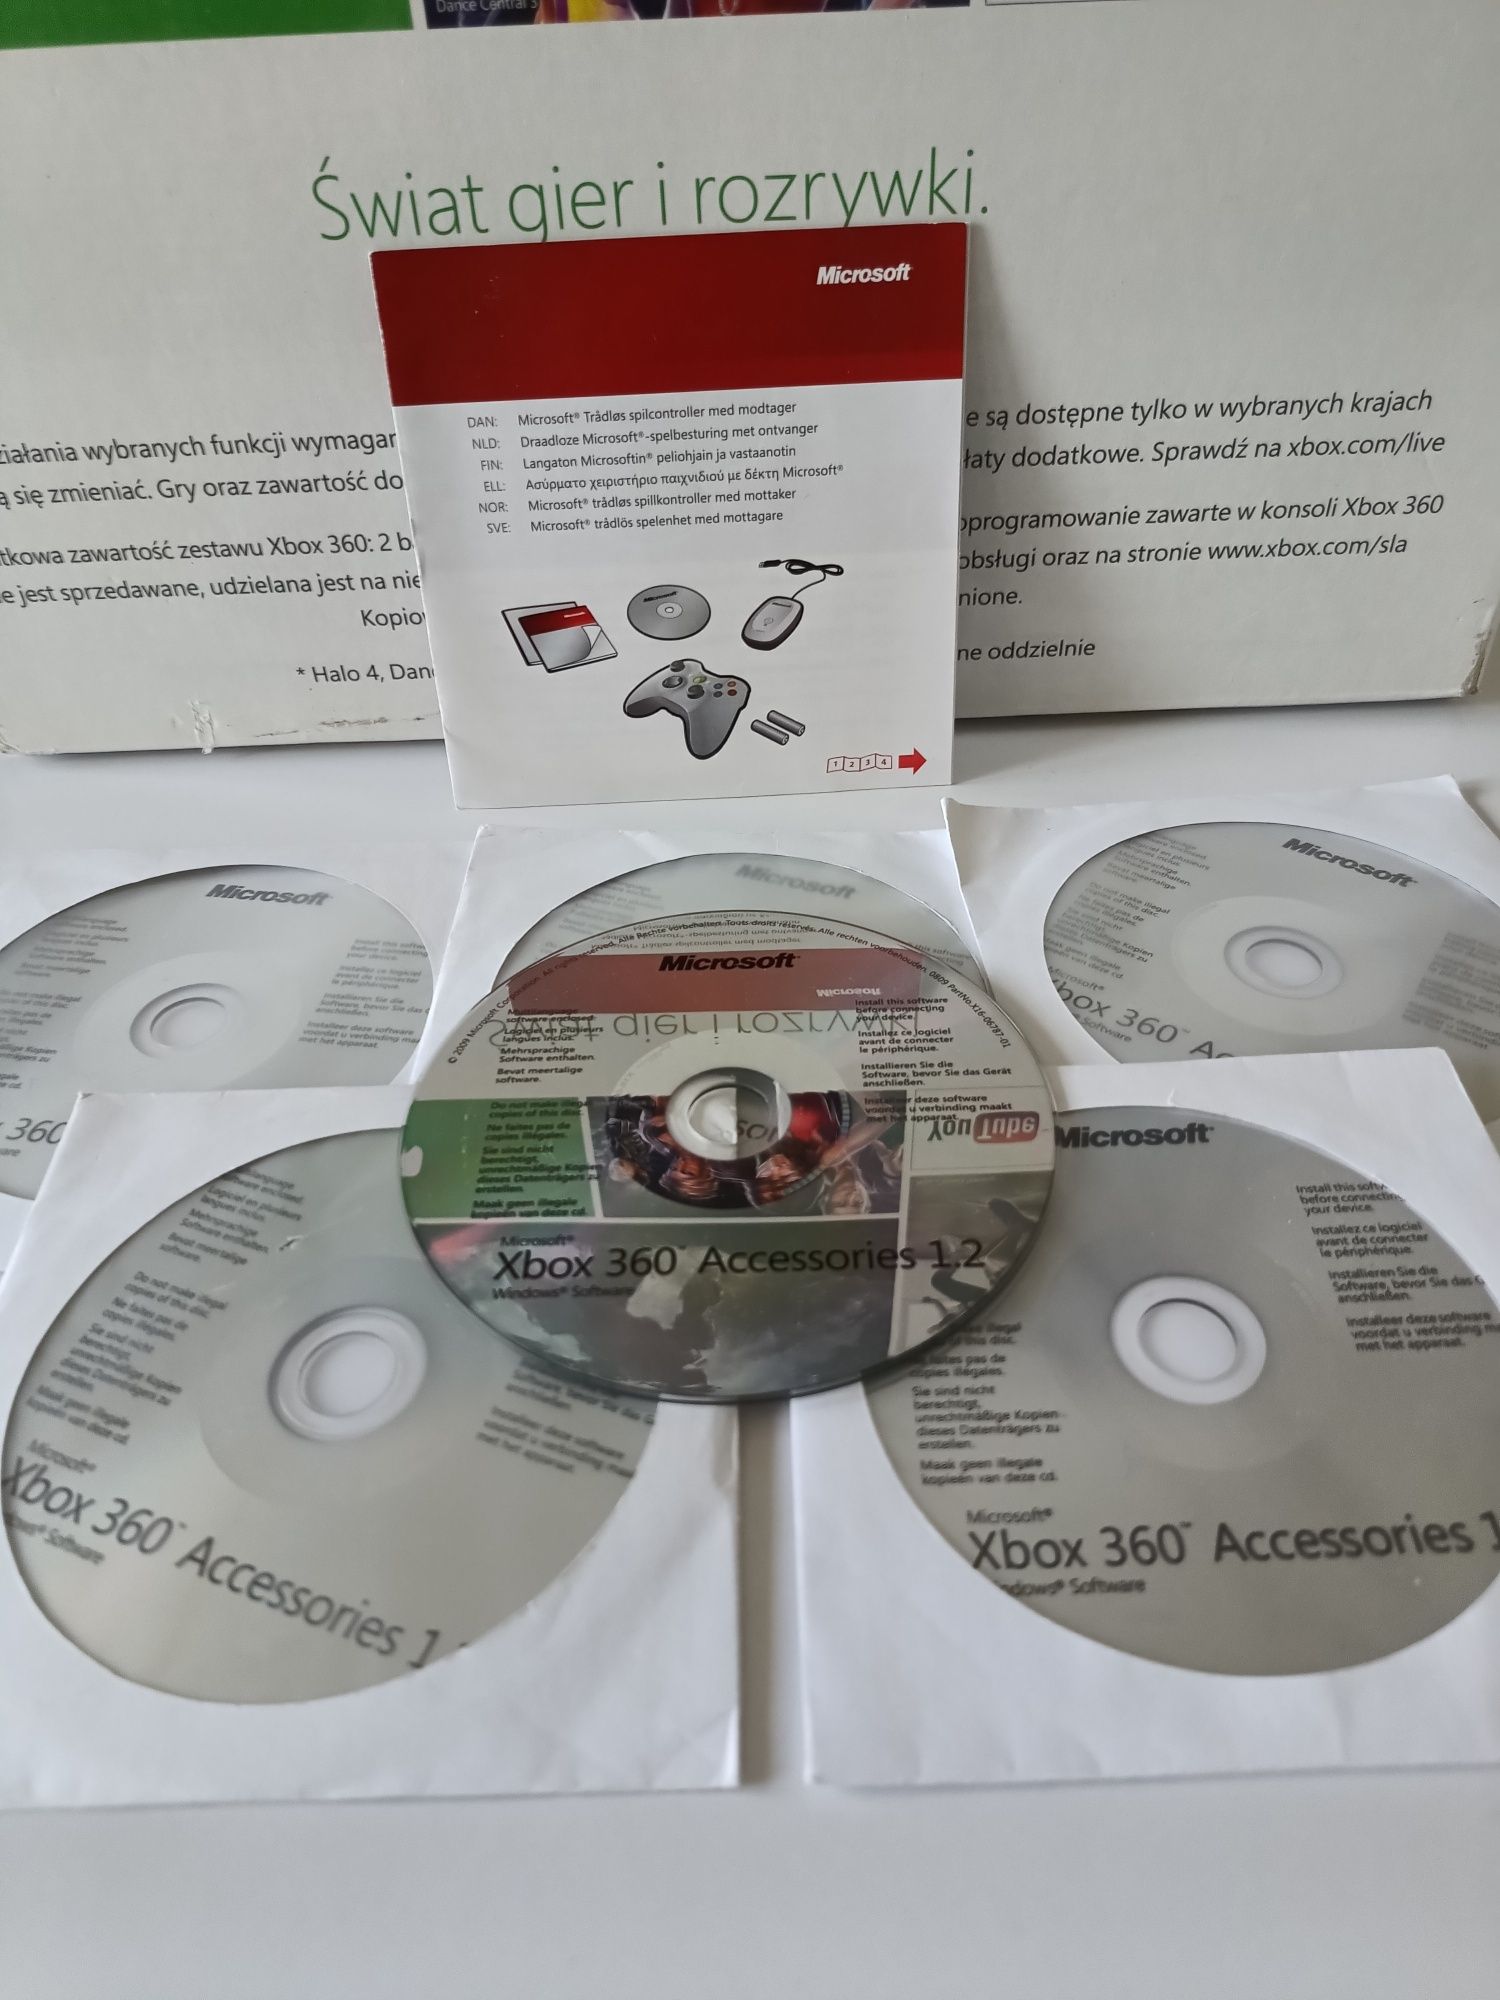 Microsoft Xbox 360 Accessories 1.2 -sterownik i opragromowanie- Nowy  Lubliniec •